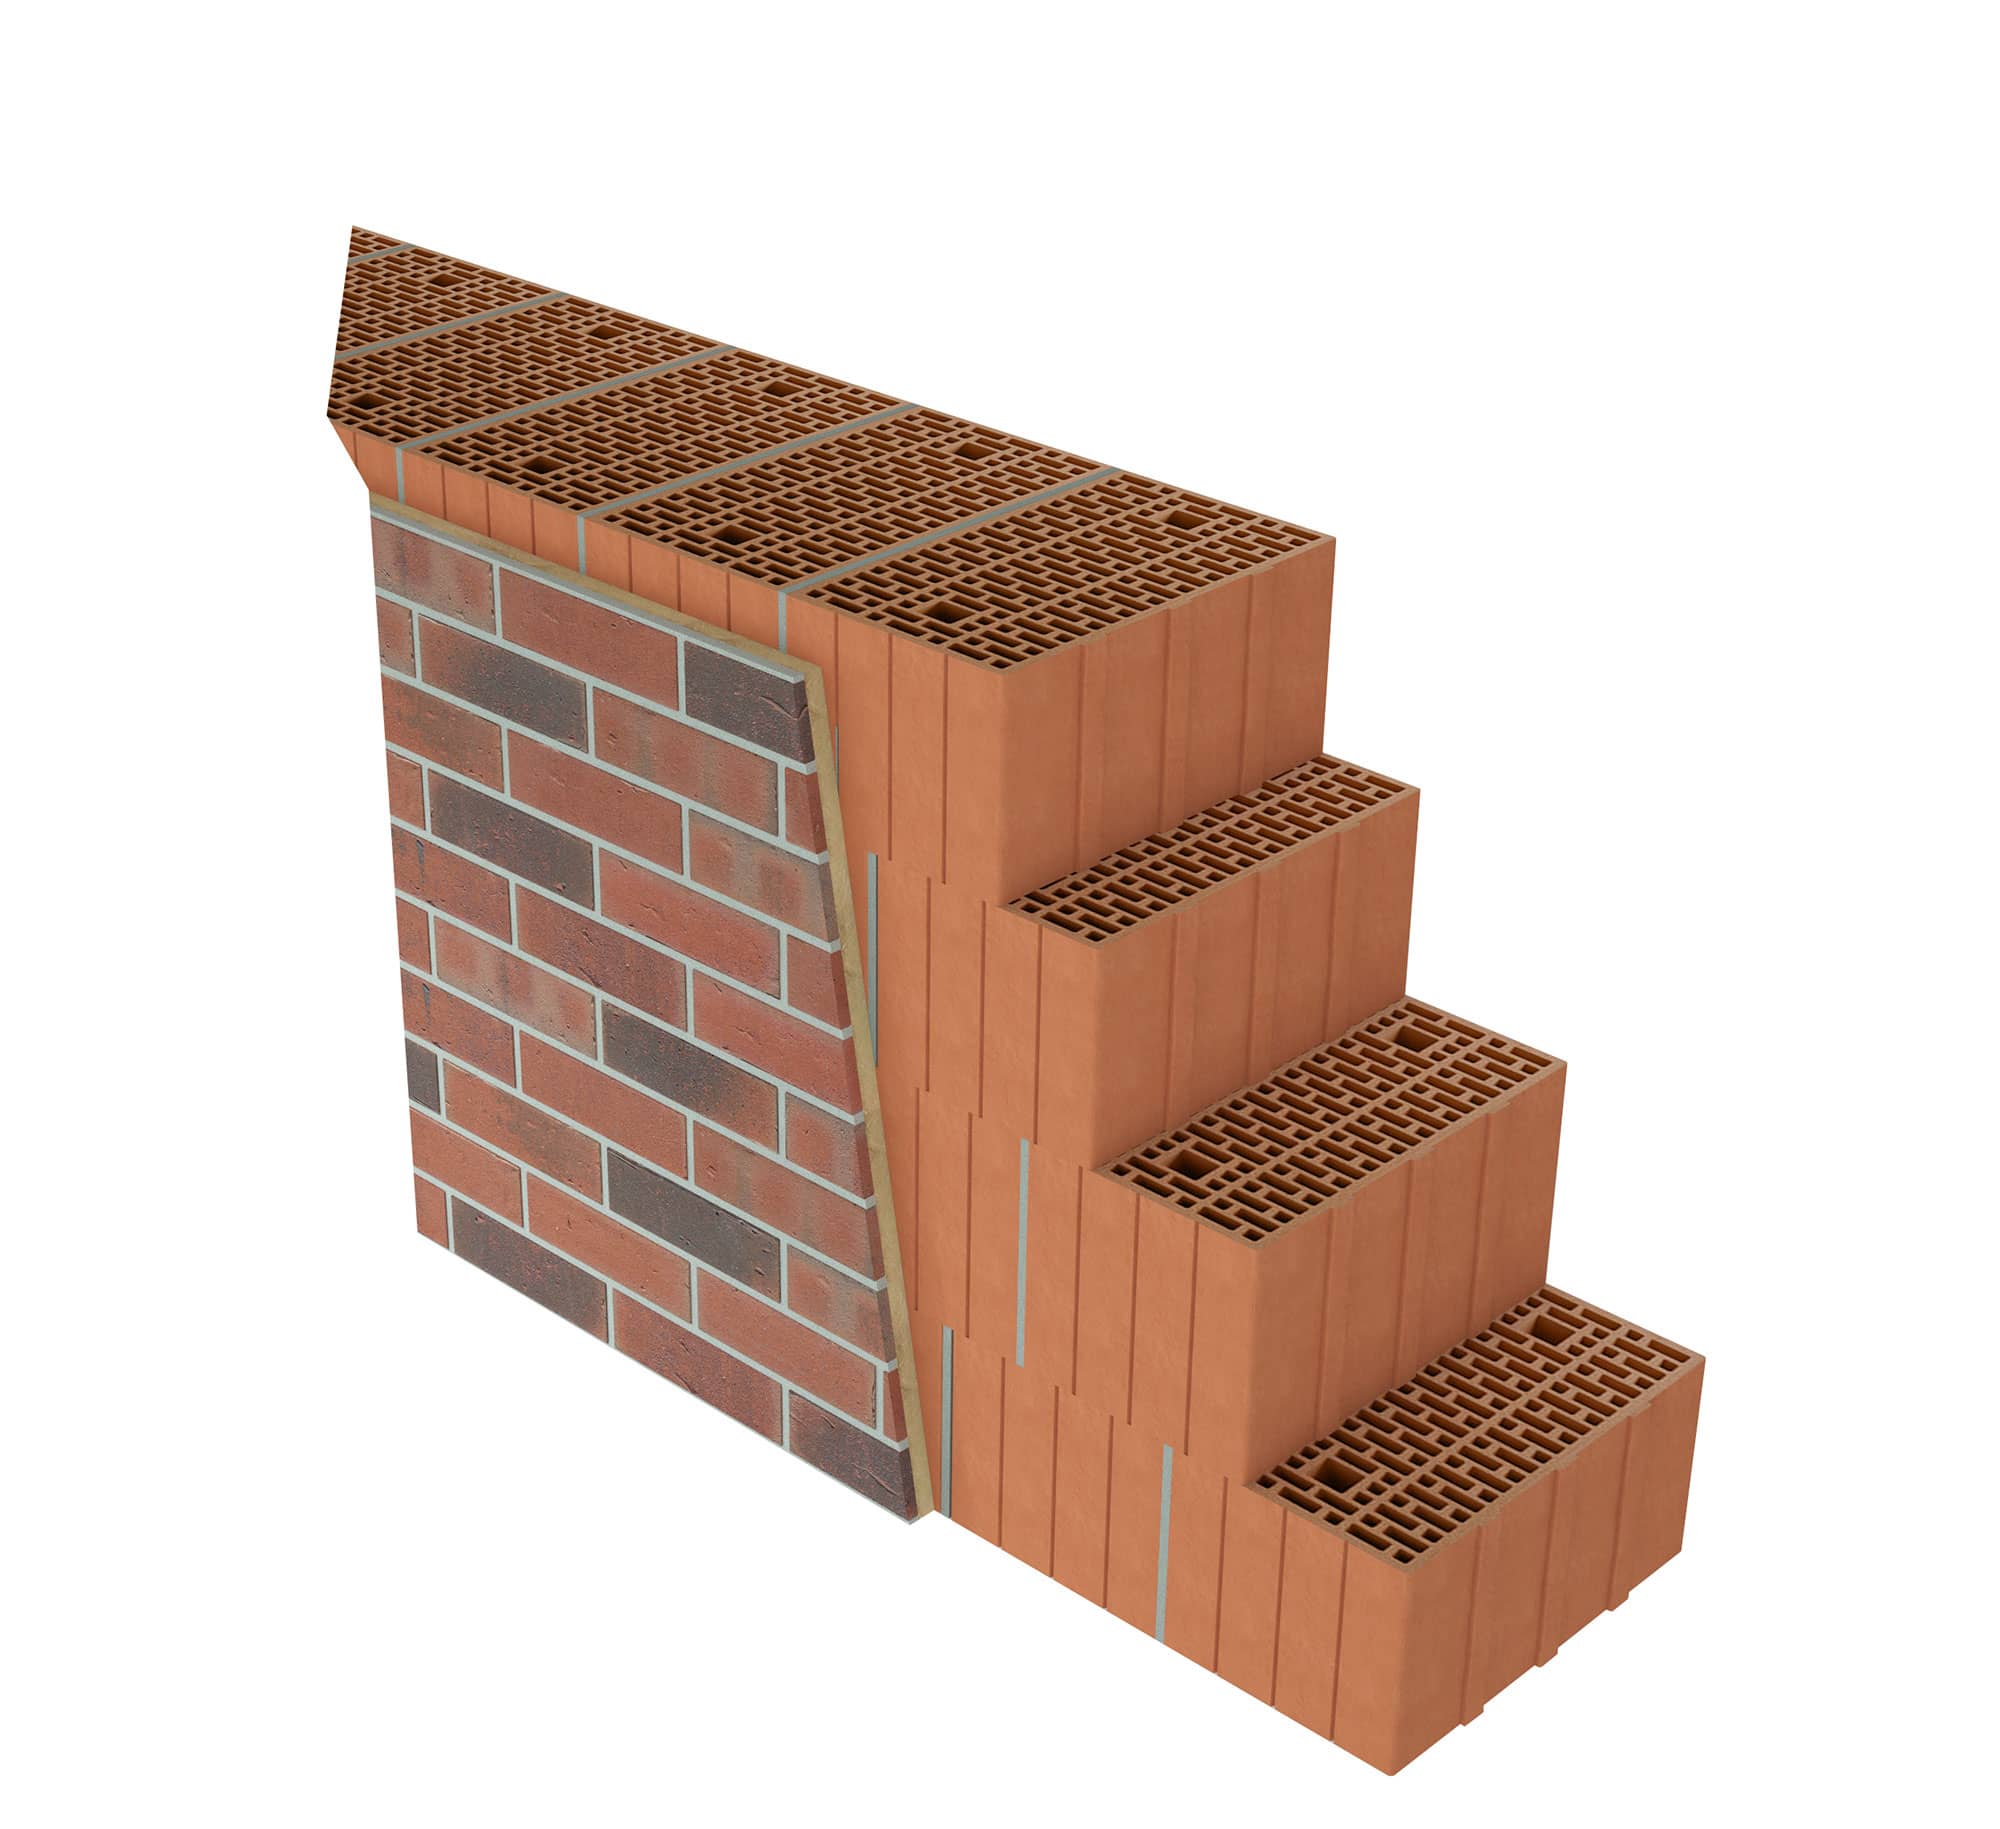 Système kess sur briques perforées verticalement